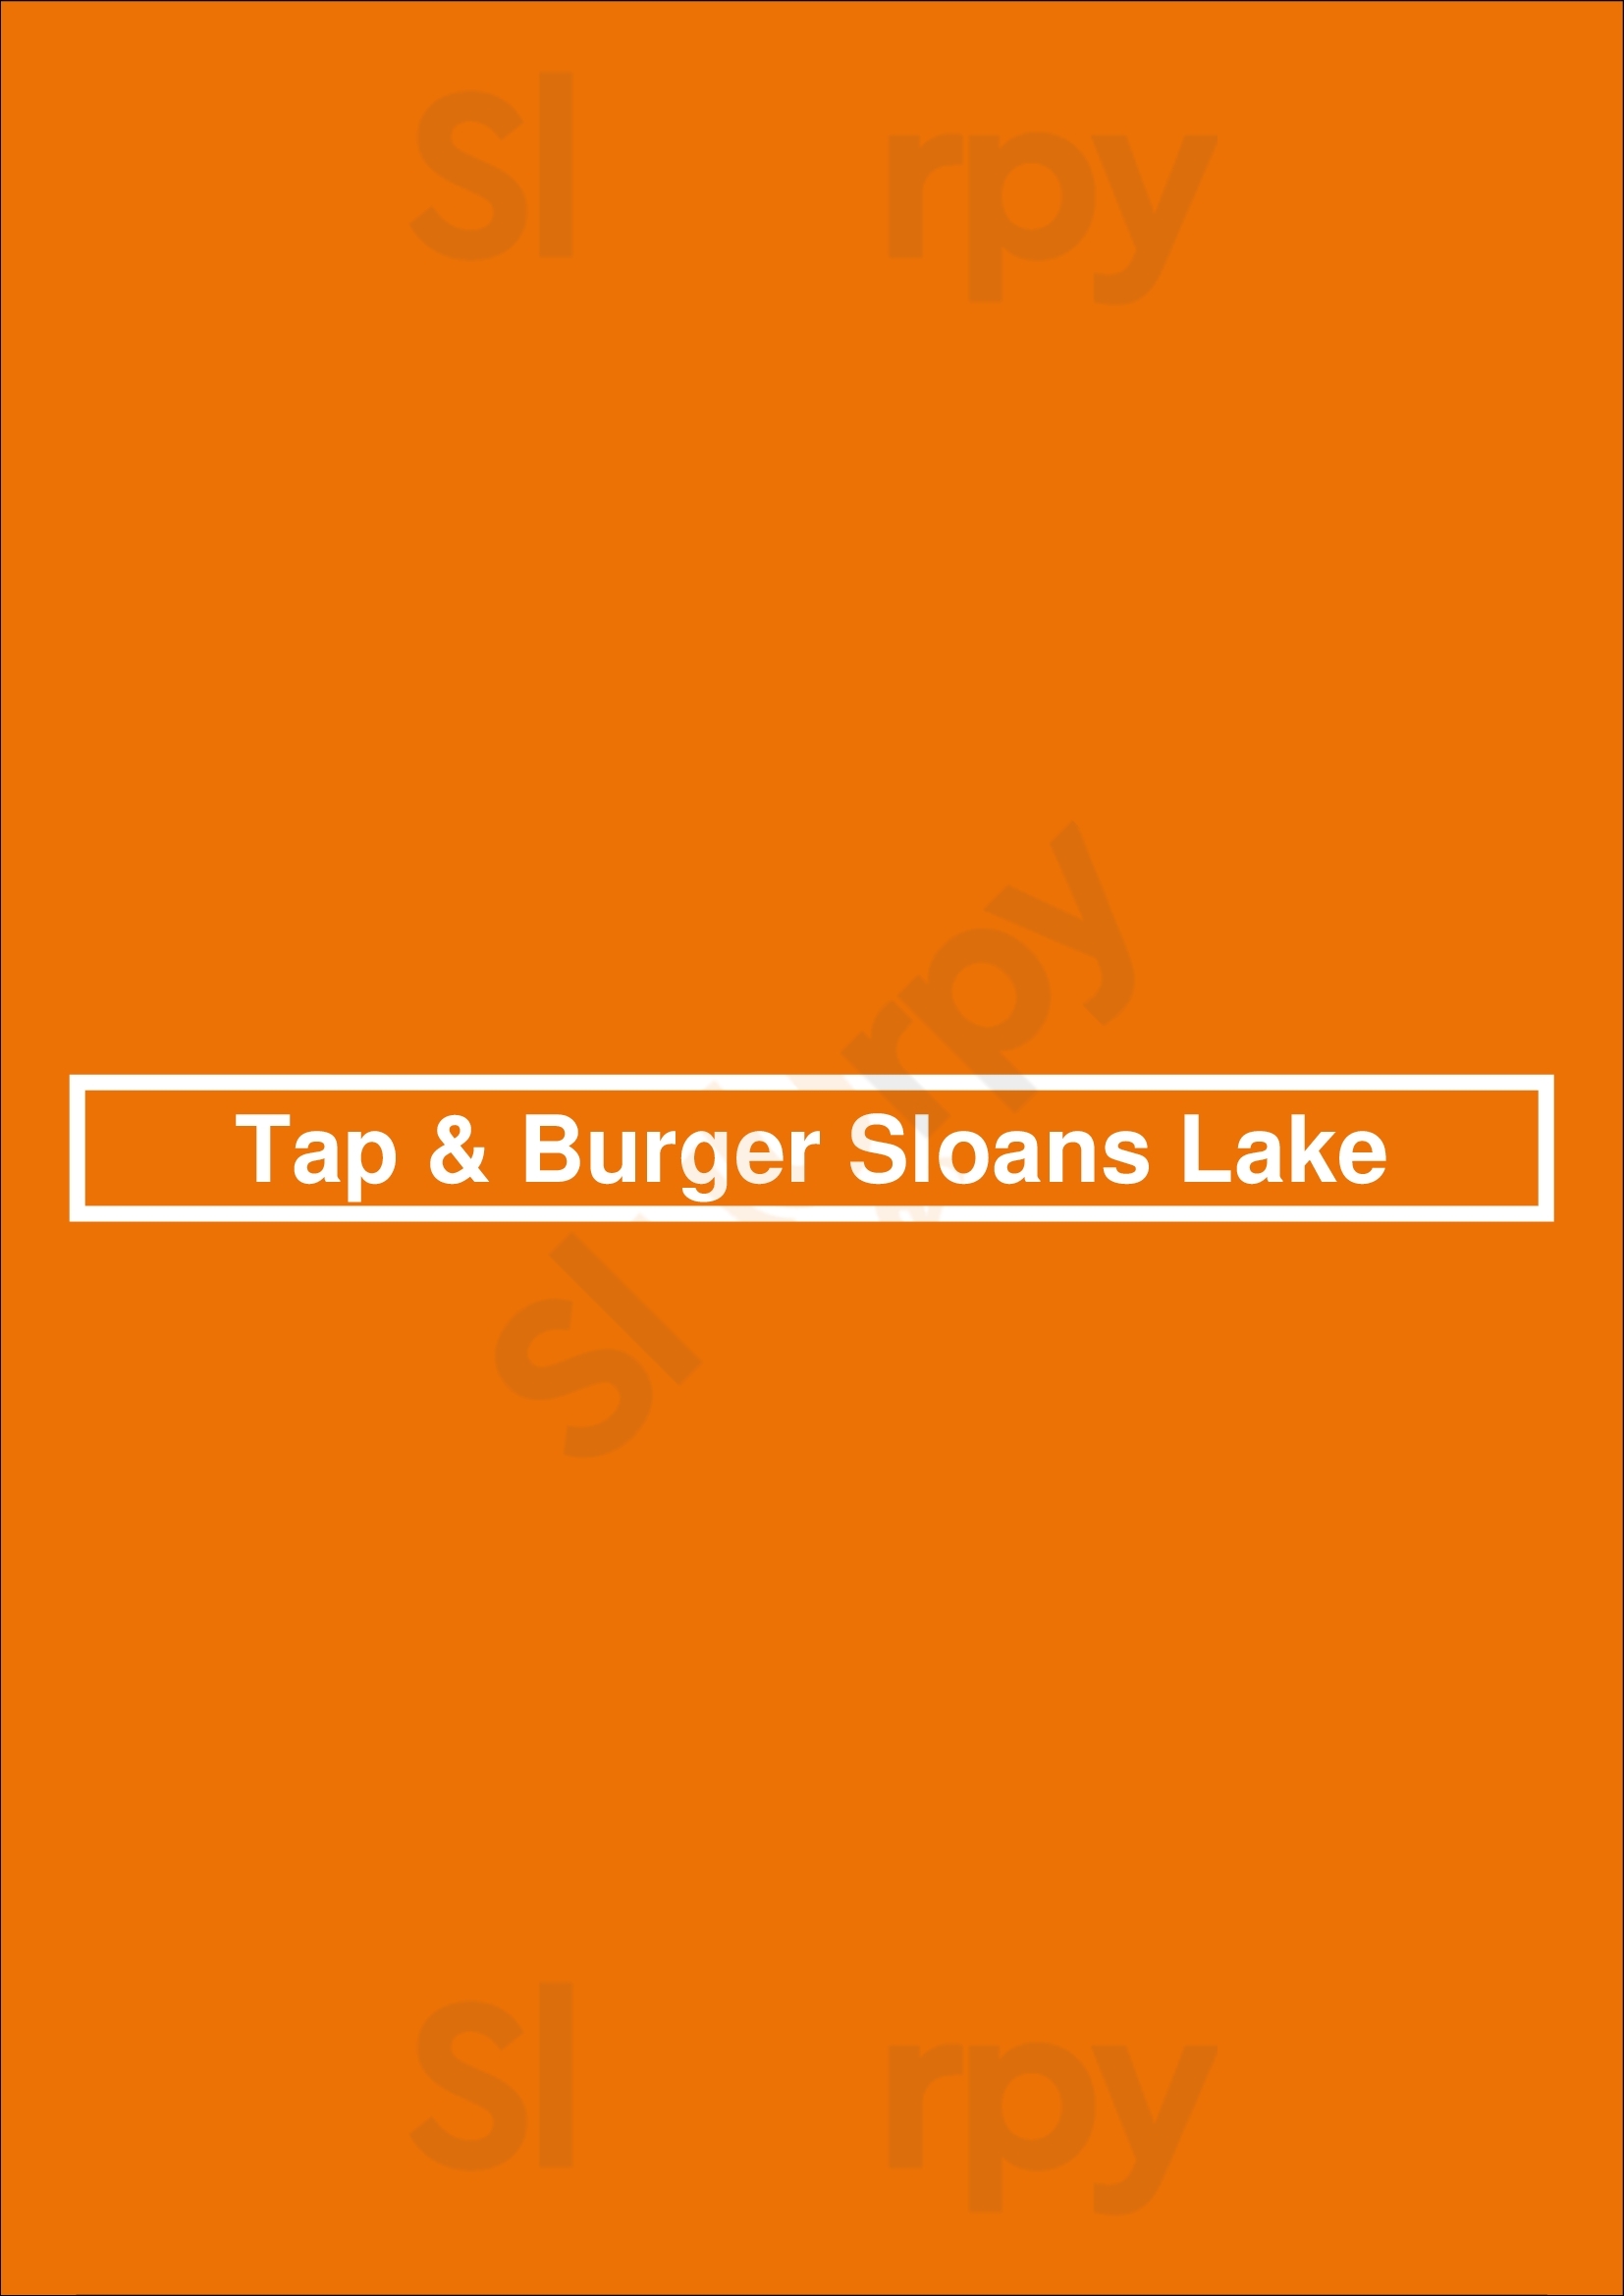 Sloan's Lake Tap & Burger Denver Menu - 1